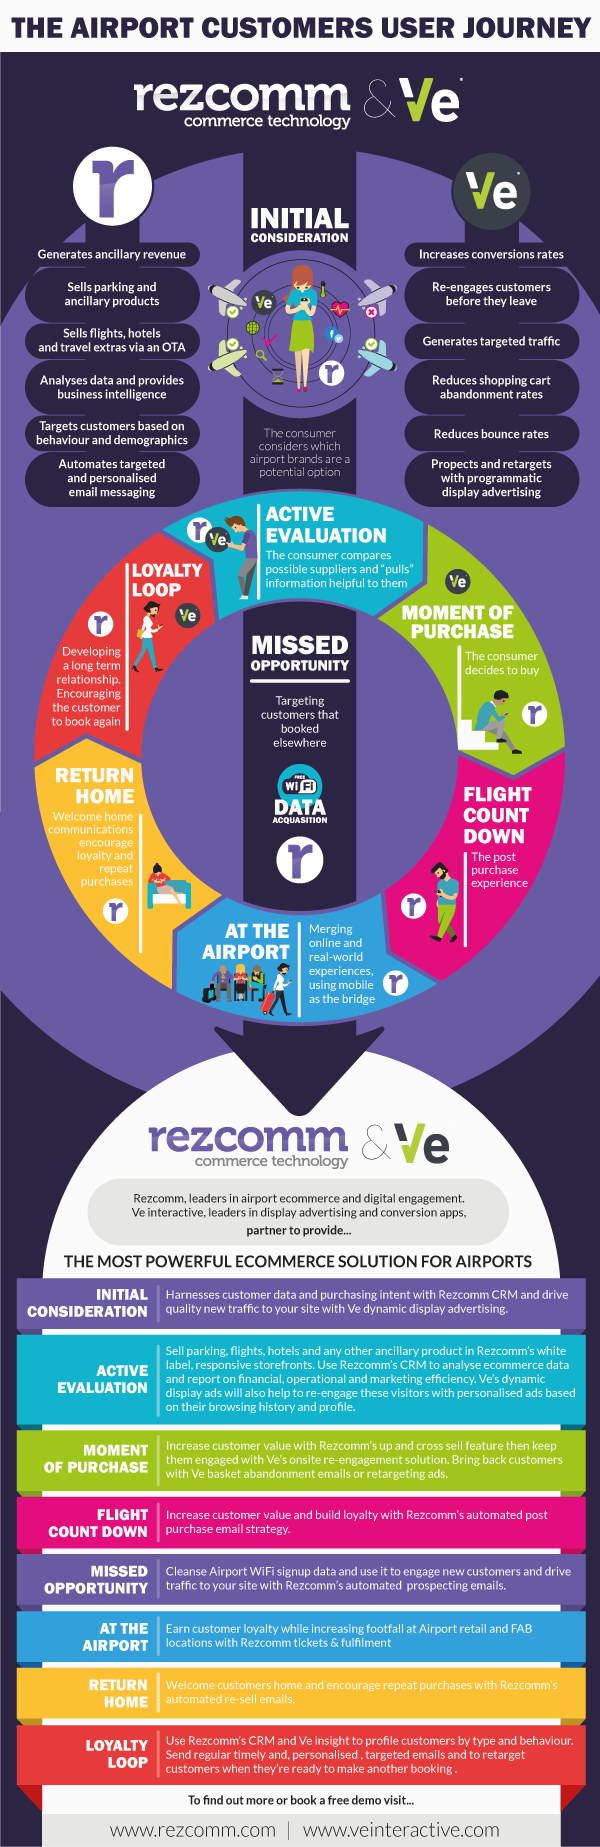 Rezcomm-Ve-Infographic